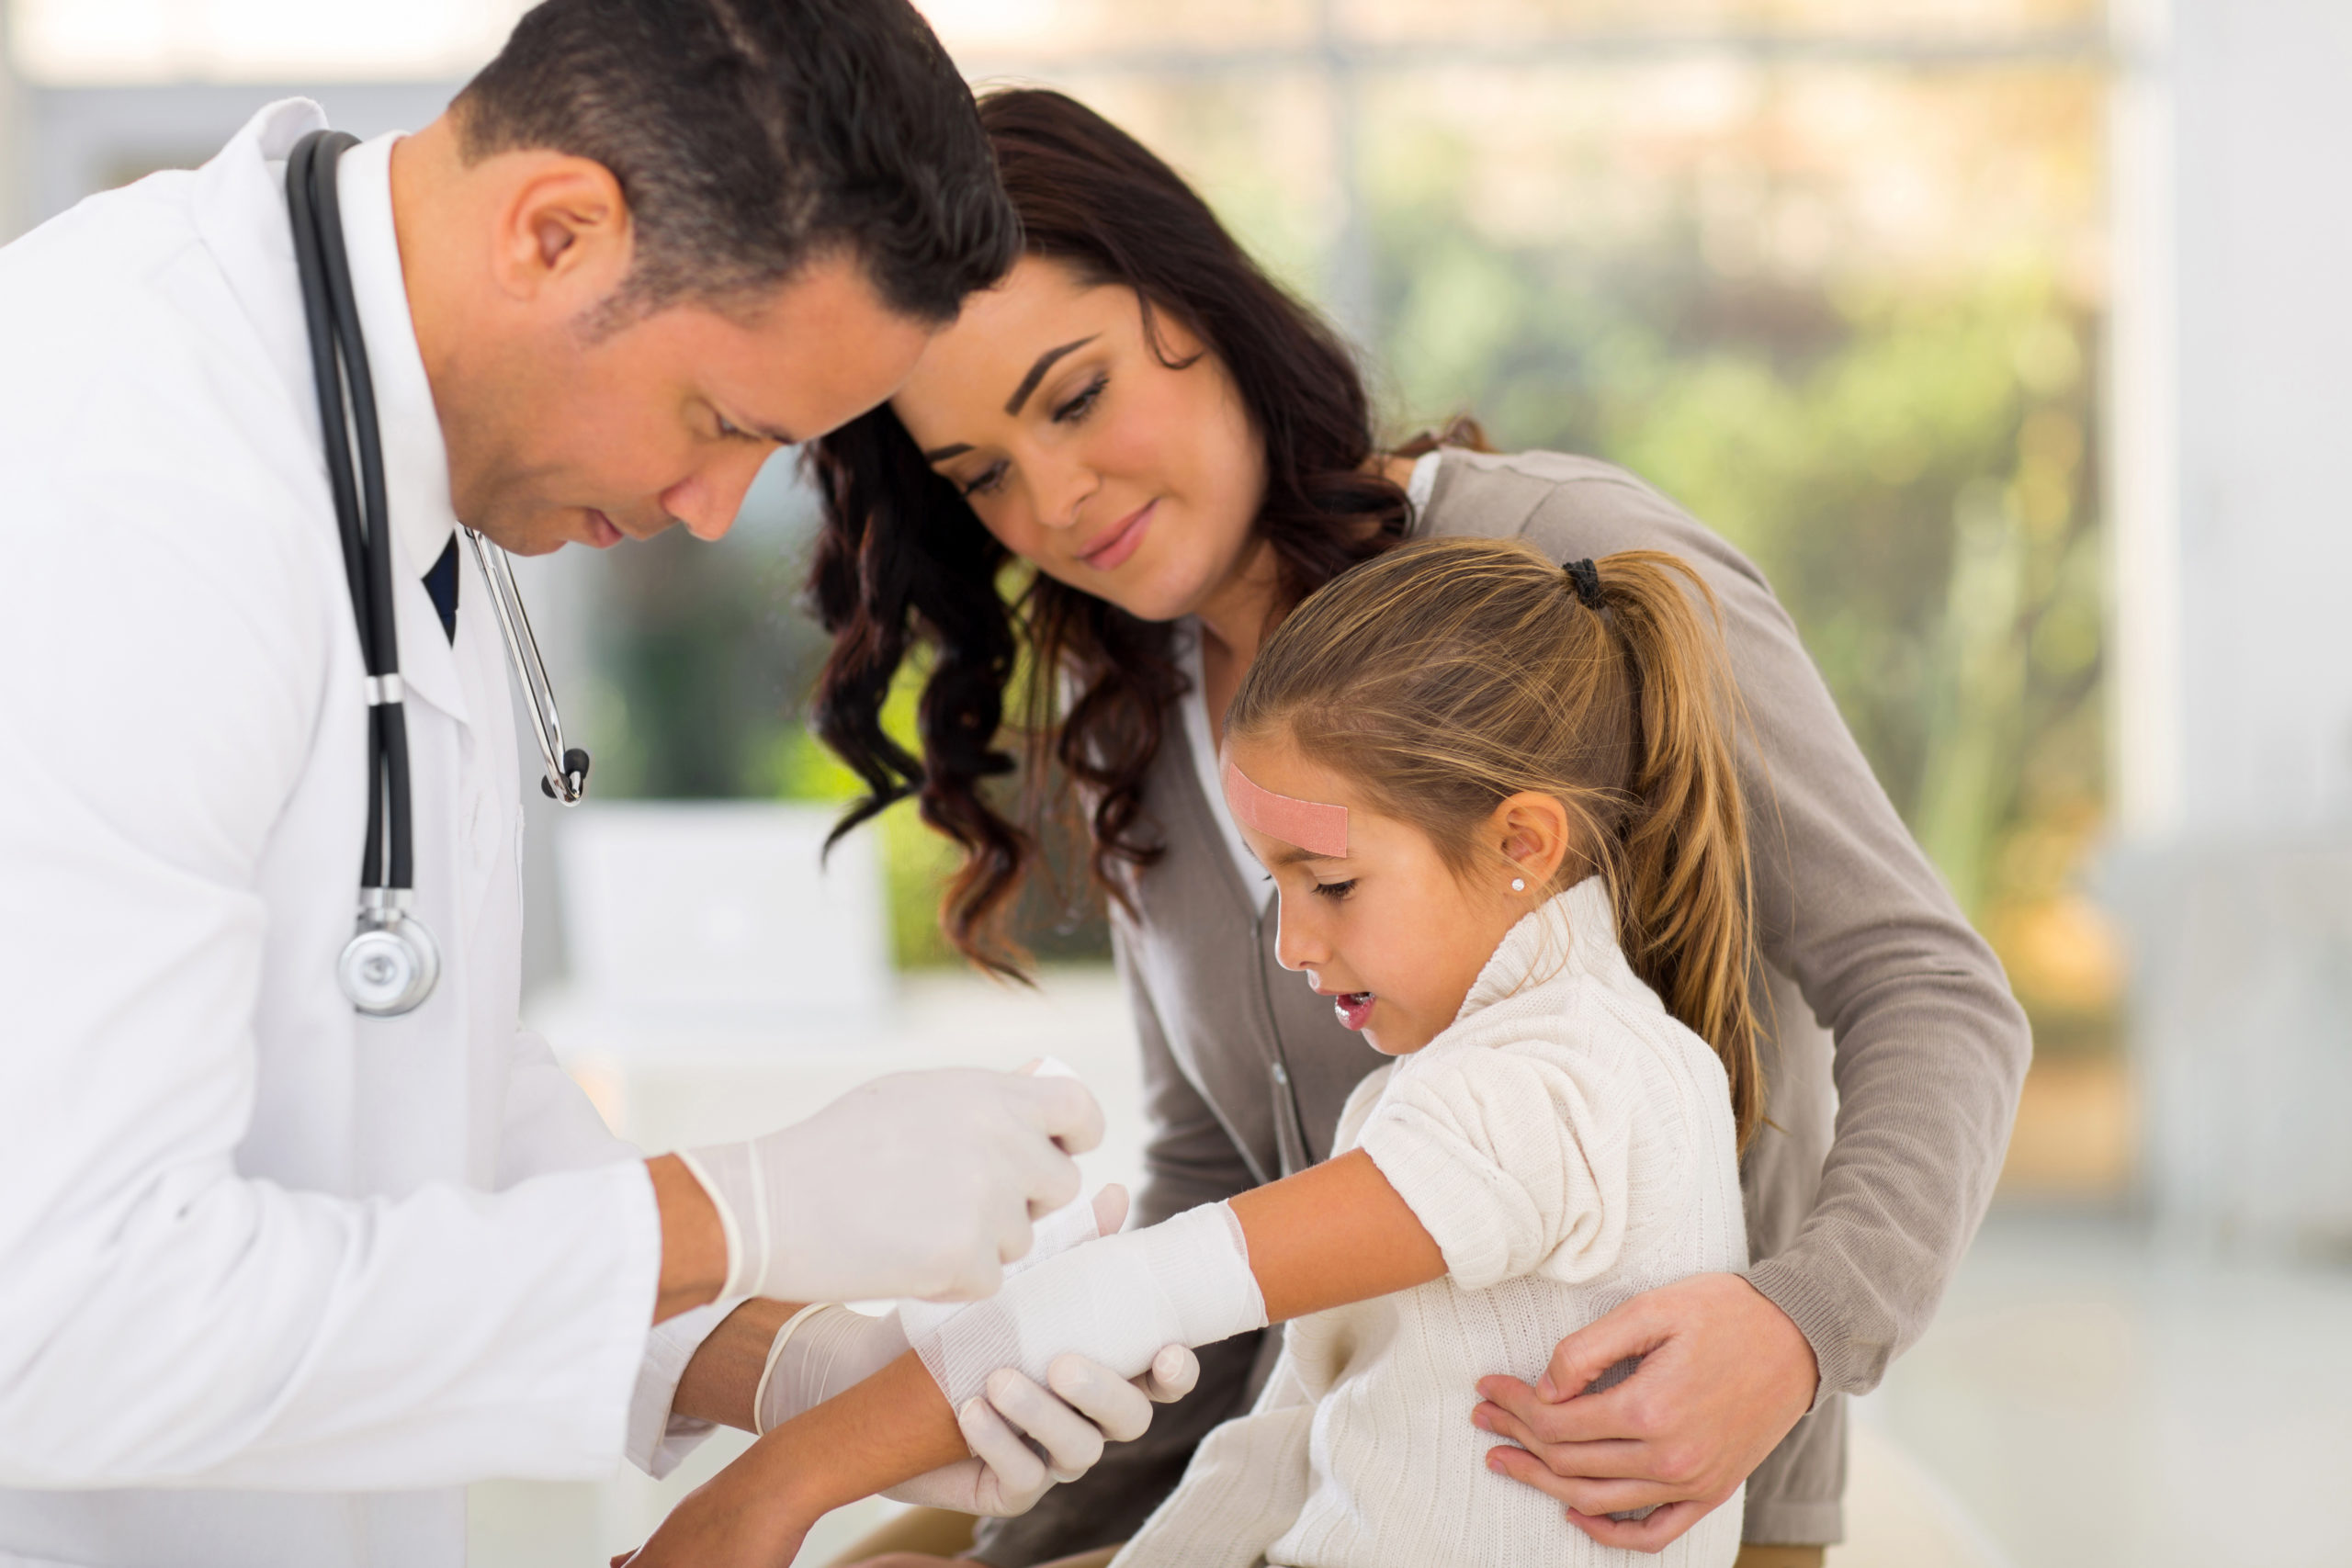 Paediatric Vaccination: Part 2